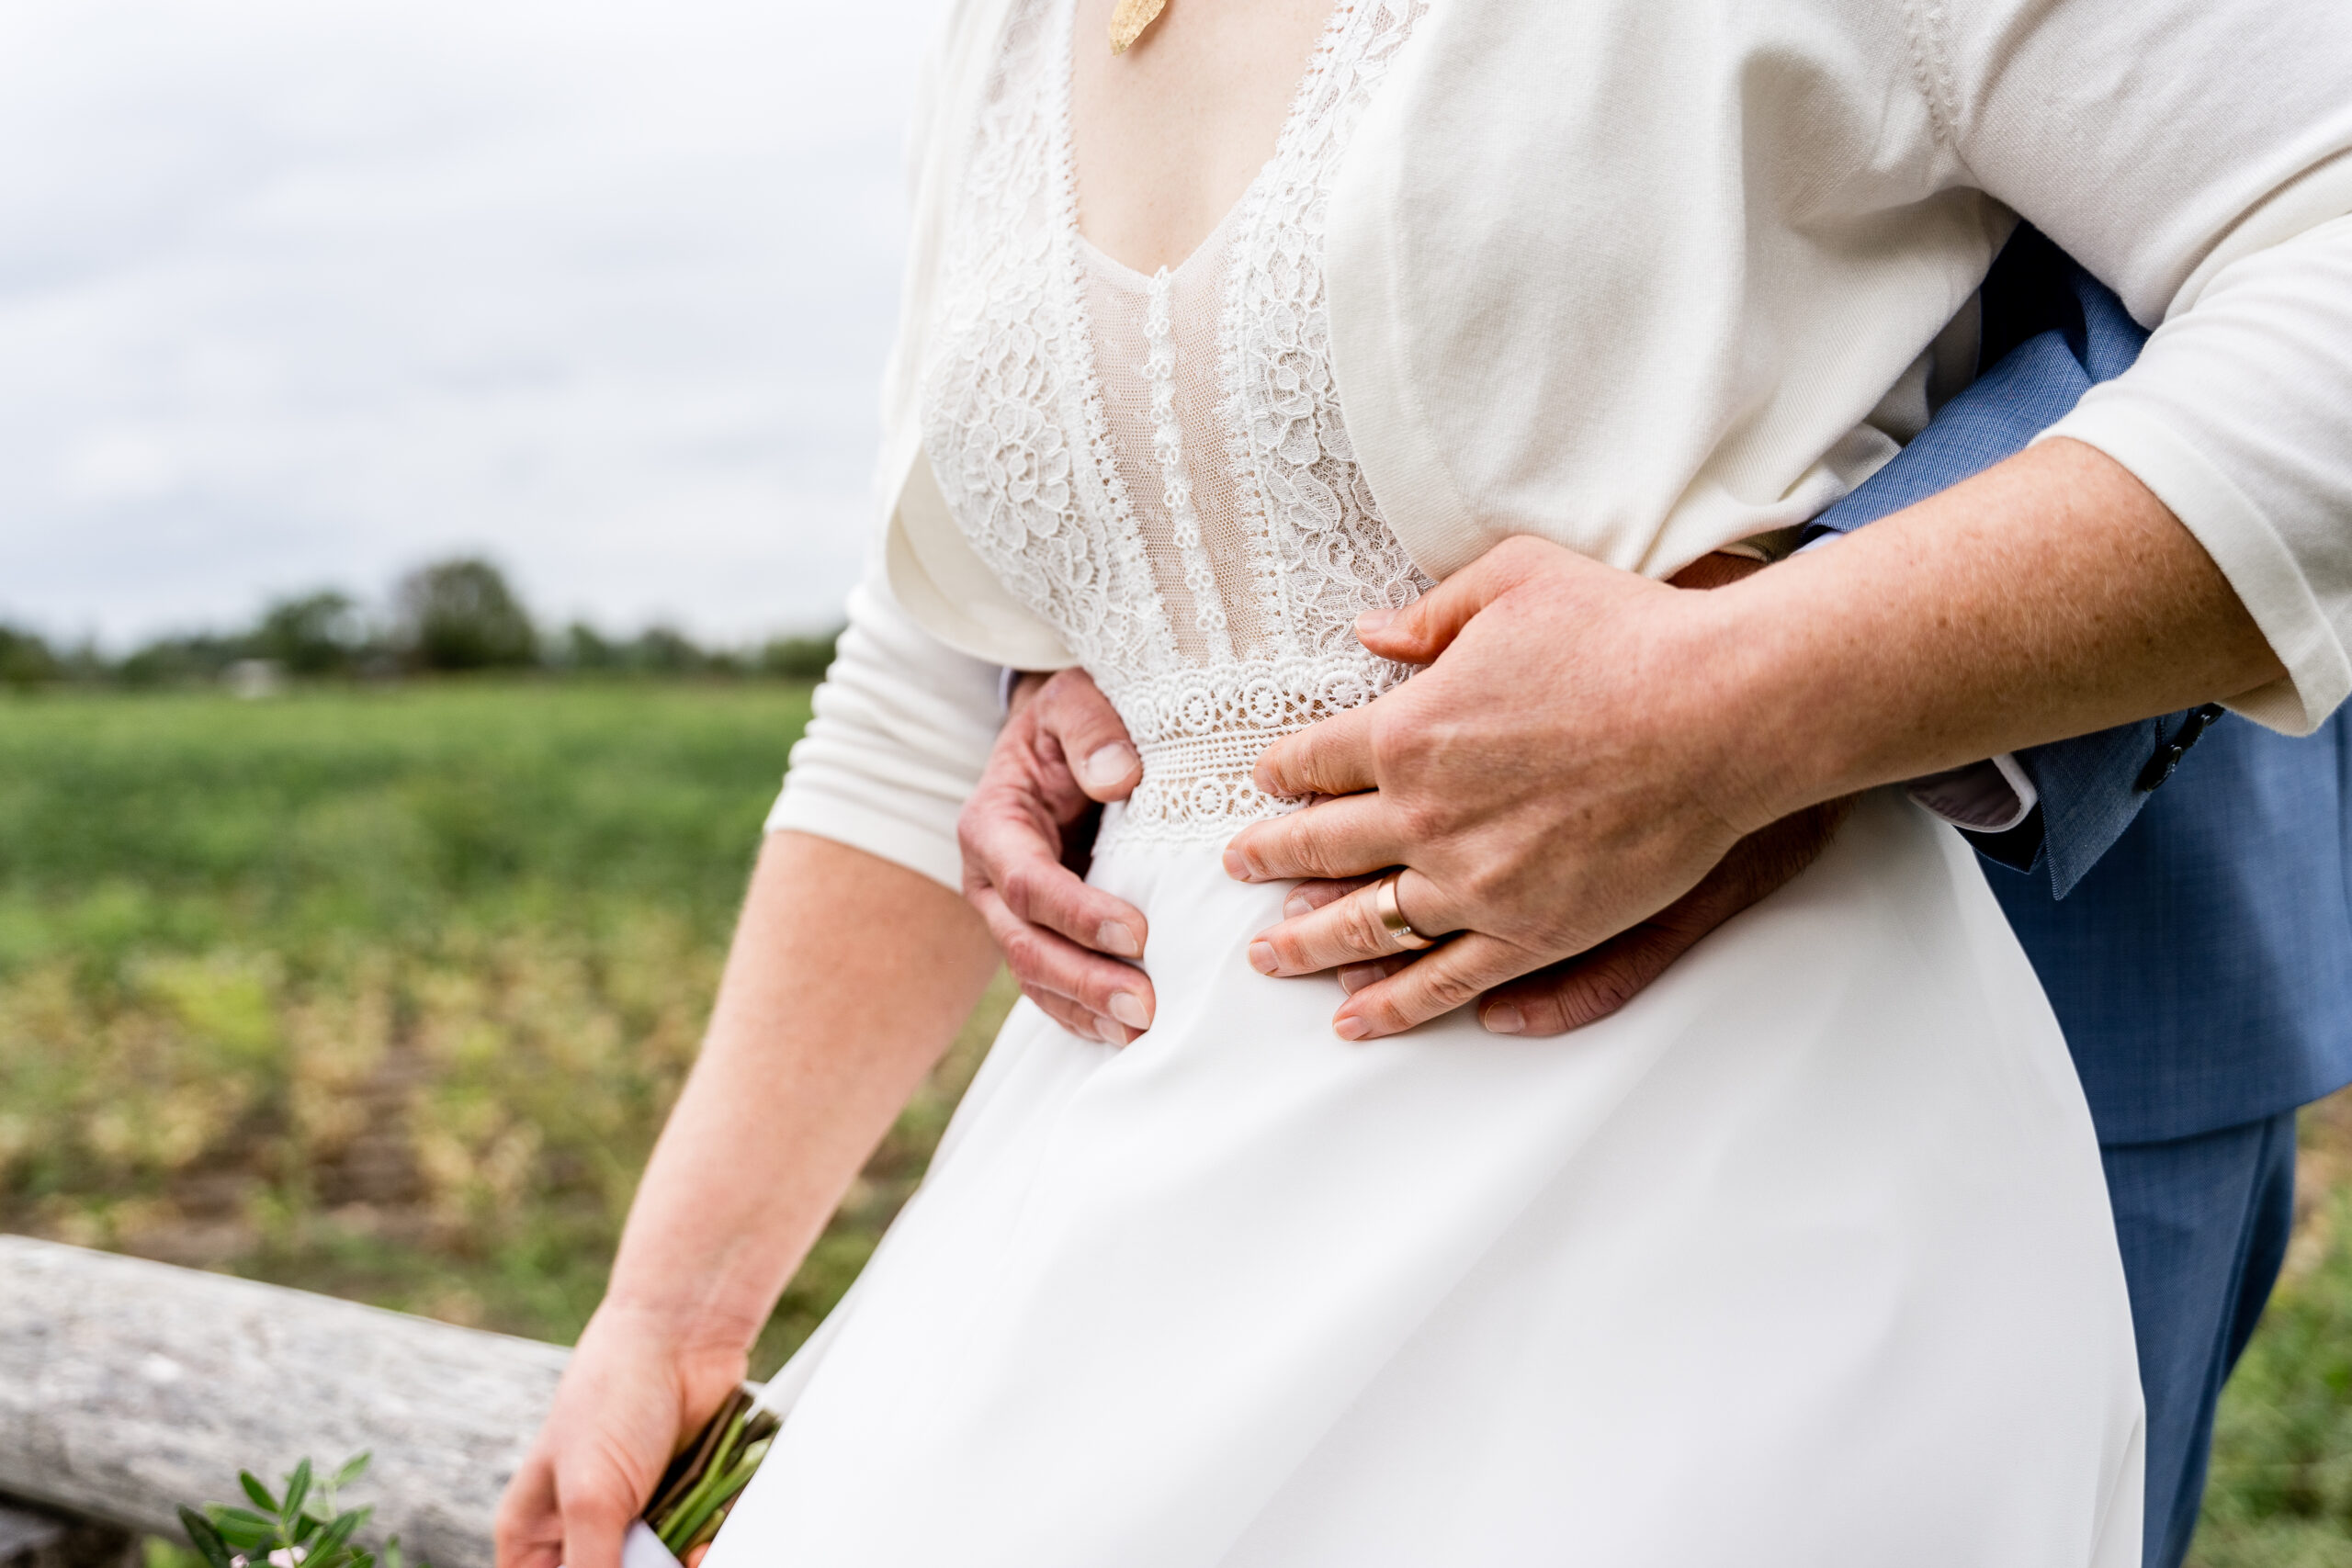 Spitze Kleid, Hände an Hüfte  Hochzeit; Hochzeitsfotografin; Hochzeitsfotografie;_Bonn_Sankt-Augustin_Katharina-Hopmann-Fotografie; Hochzeitsreportage